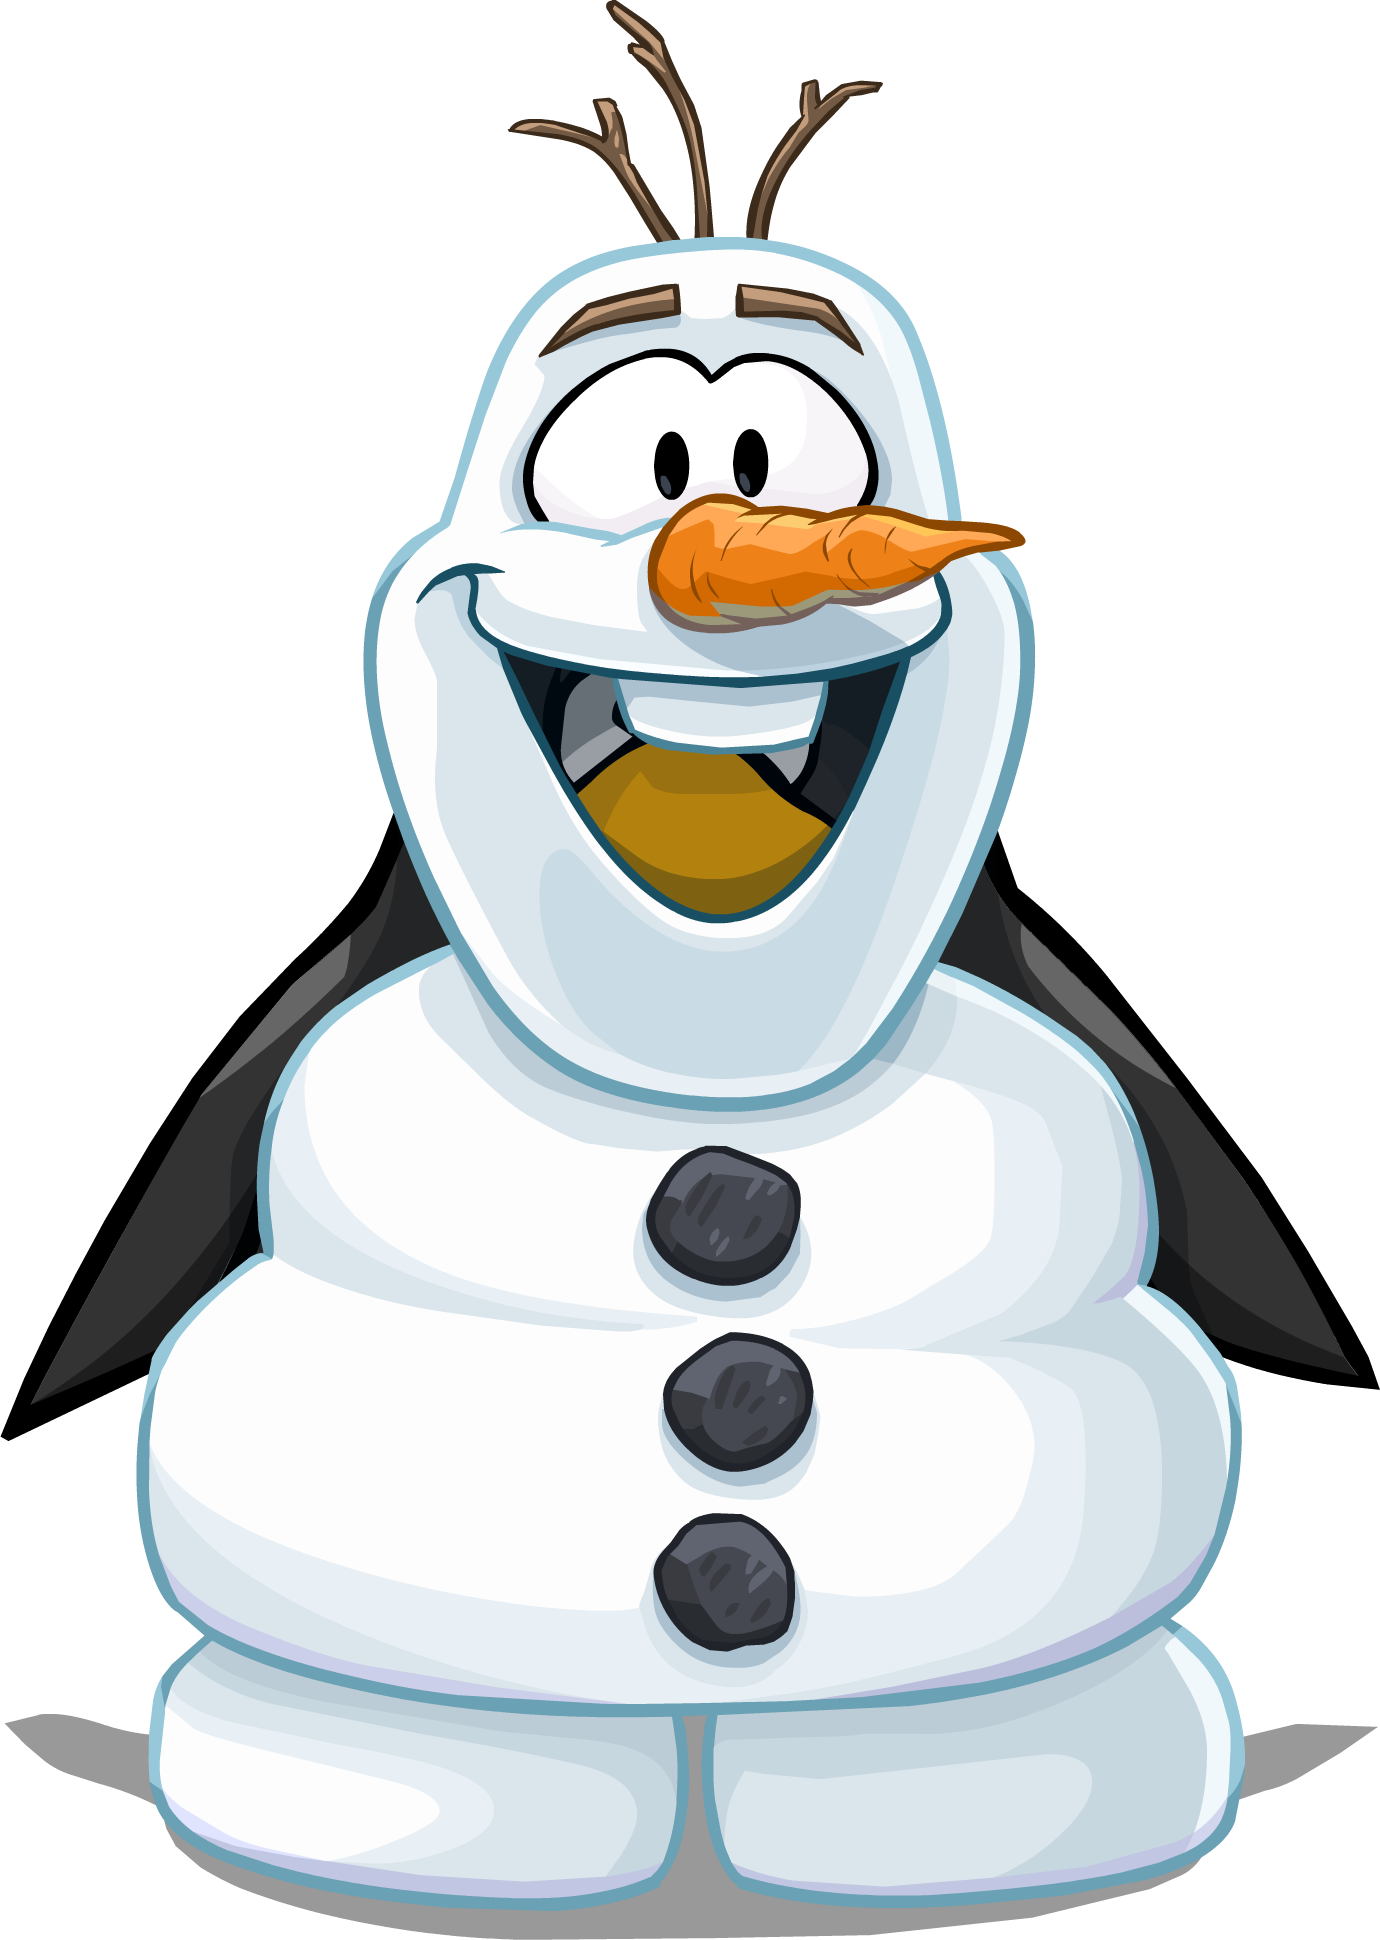 Olaf's Costume Pc - Club Penguin Olaf (1380x1940)